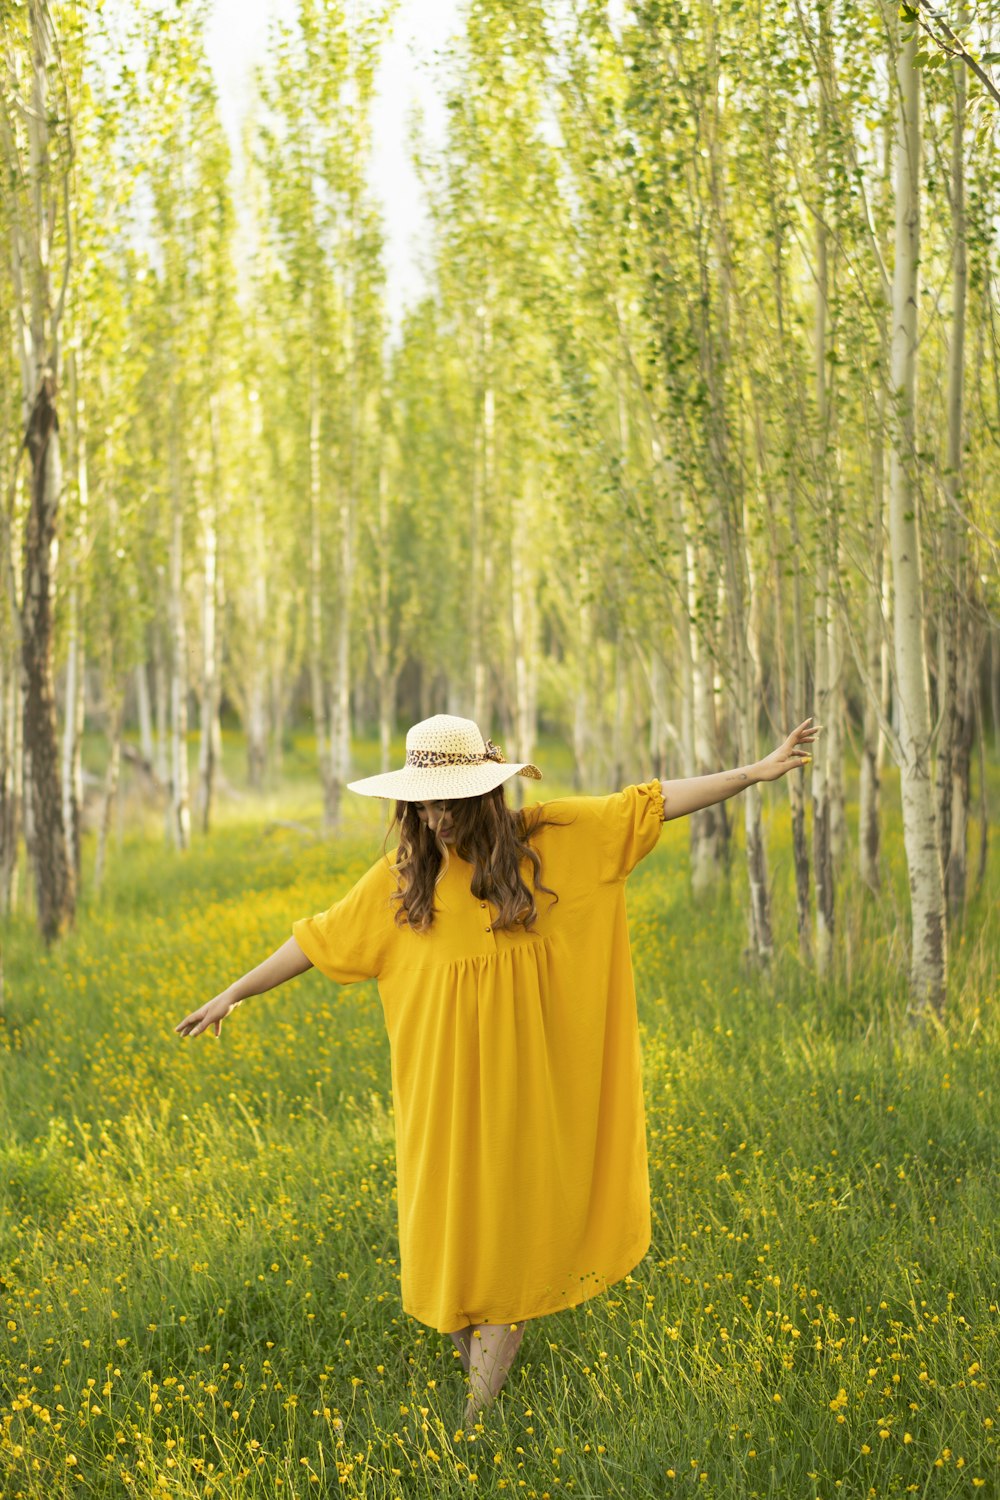 mulher no vestido amarelo que usa o chapéu marrom em pé no campo verde da grama durante o dia